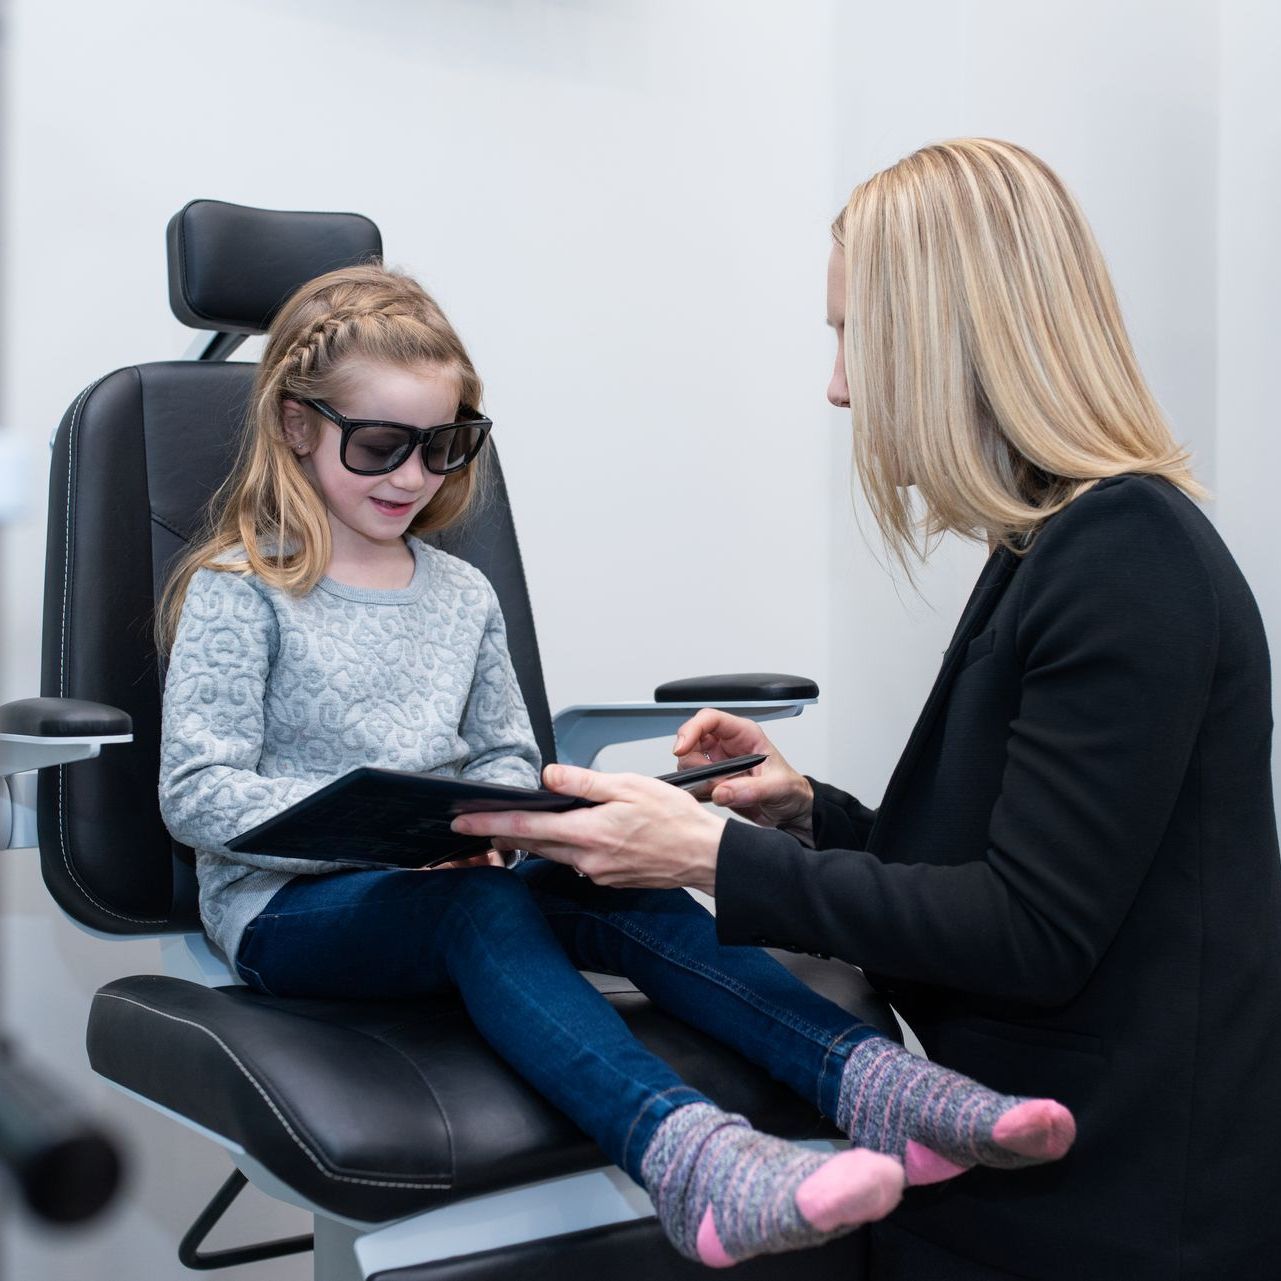 children eye exam appointment